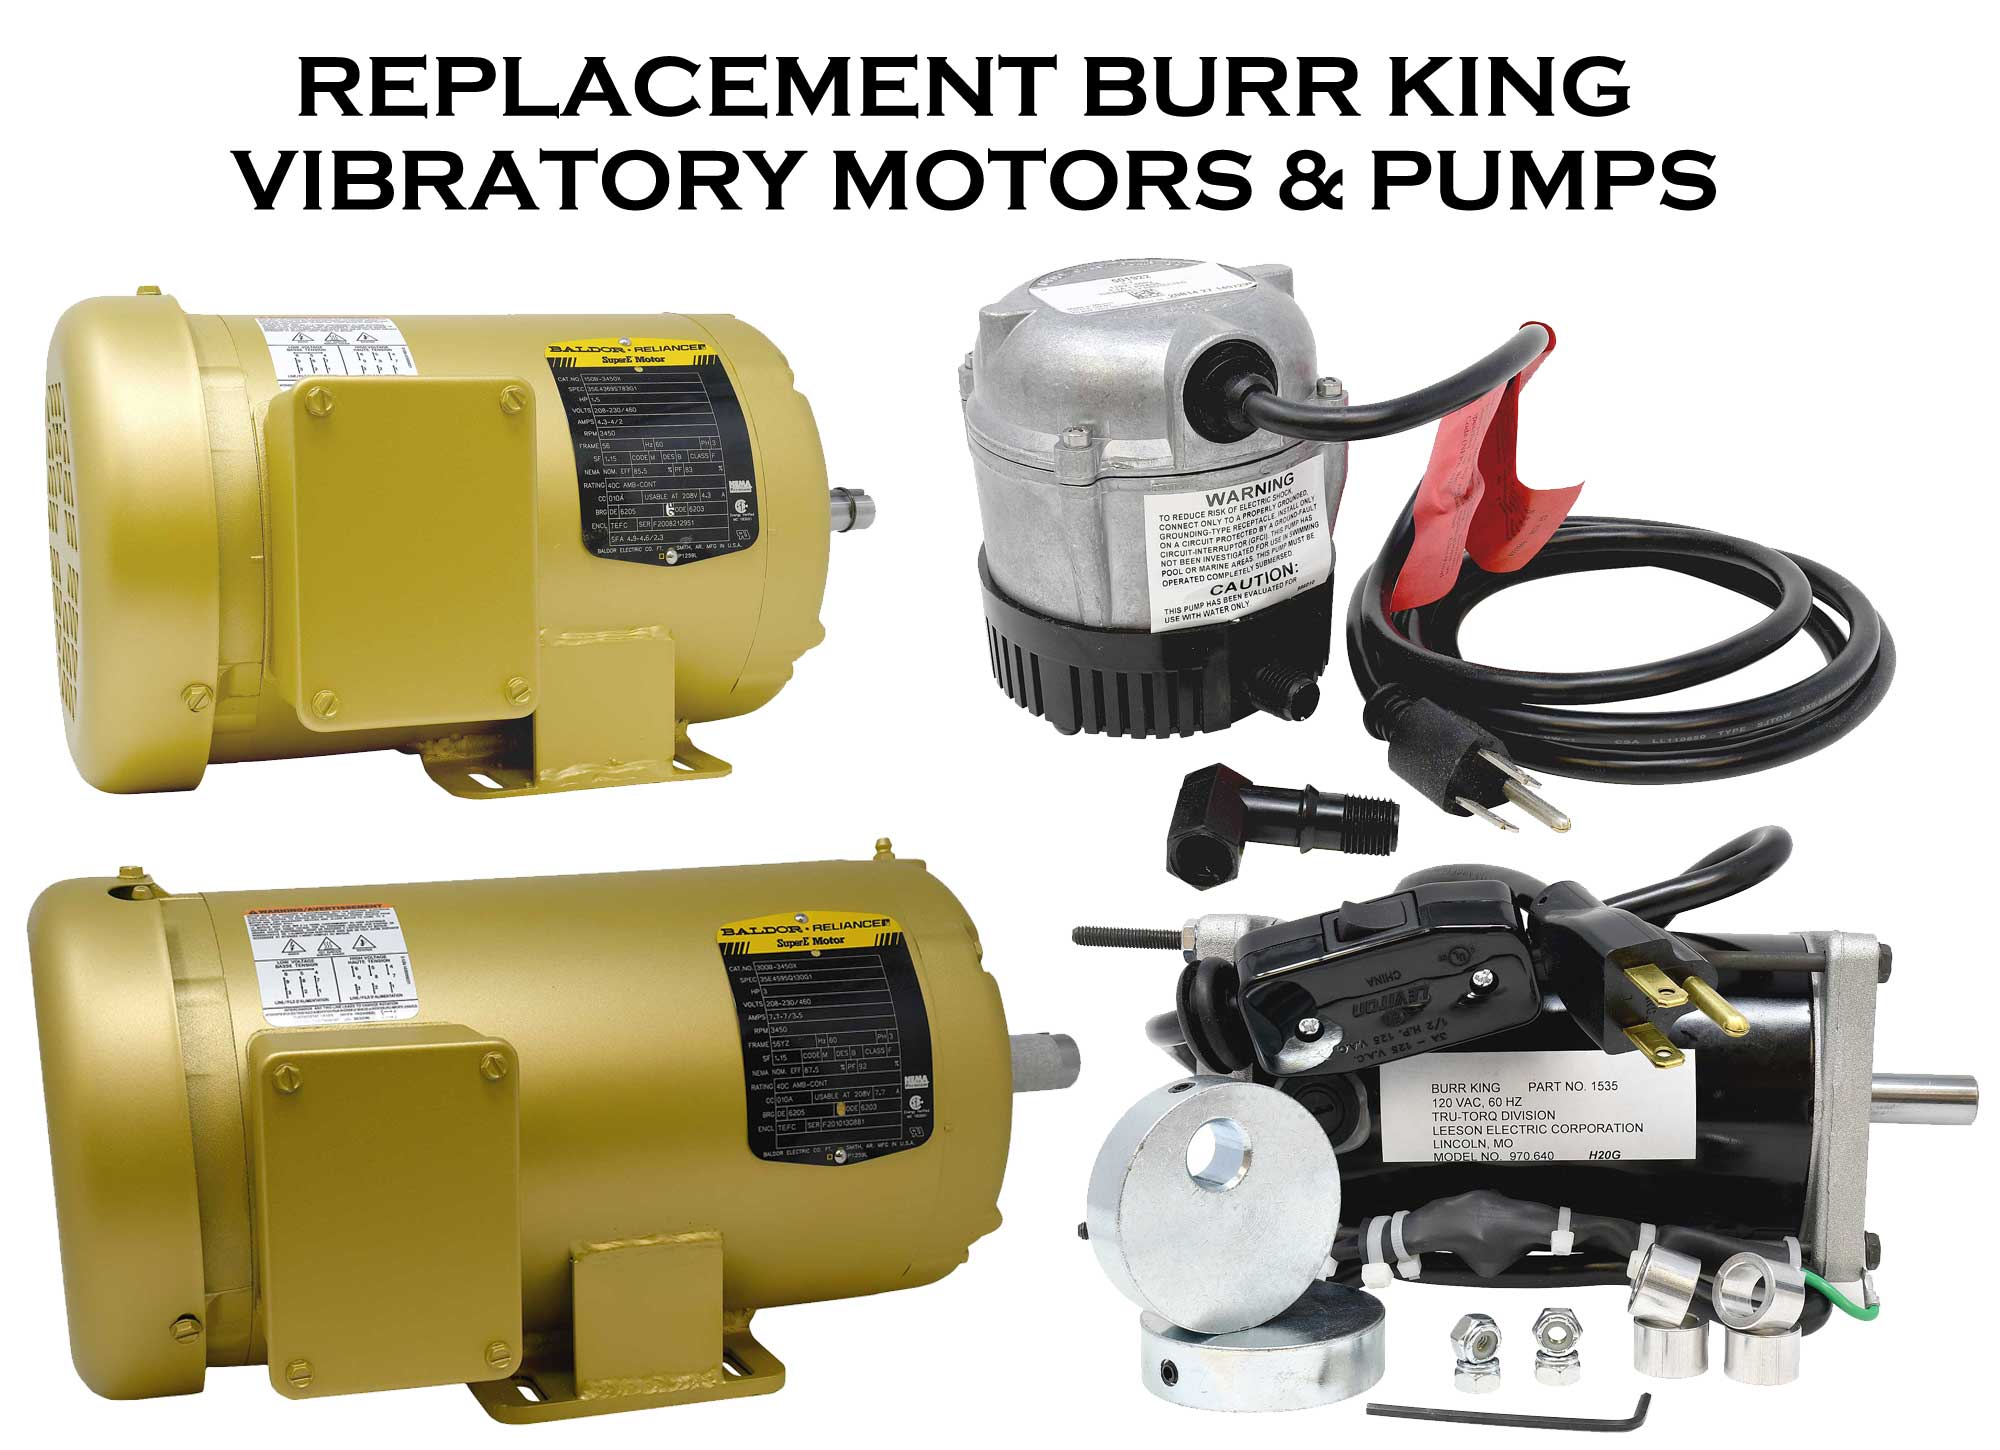 Vibratory motors and pumps